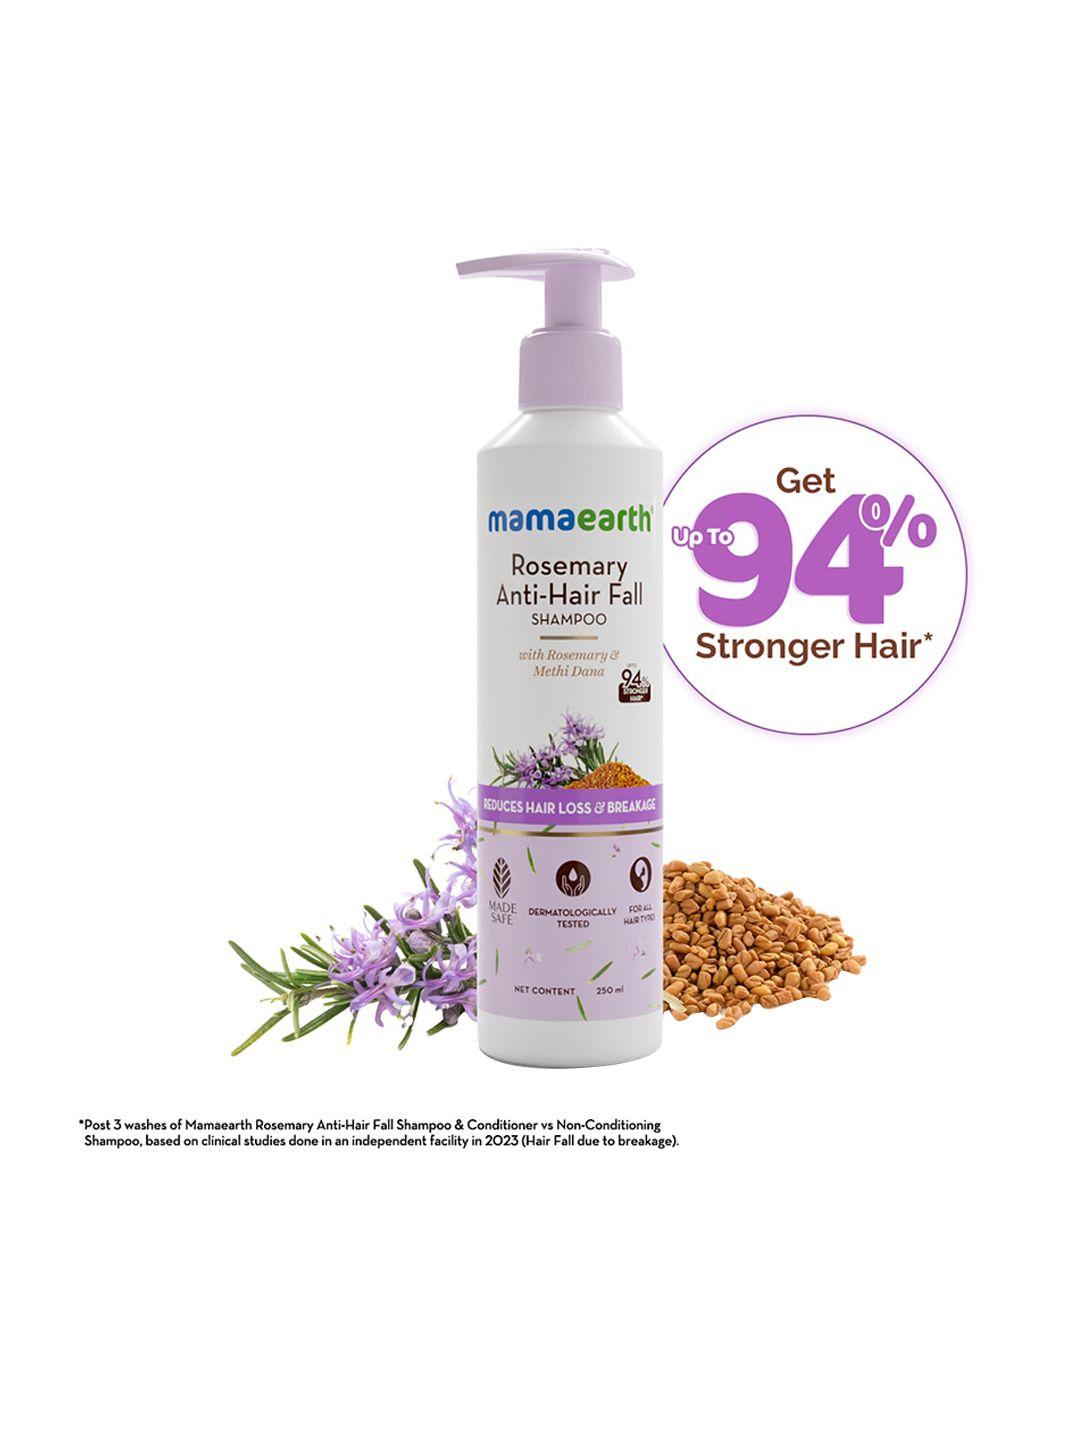 mamaearth rosemary anti-hair fall shampoo for reducing hair loss & breakage - 250 ml